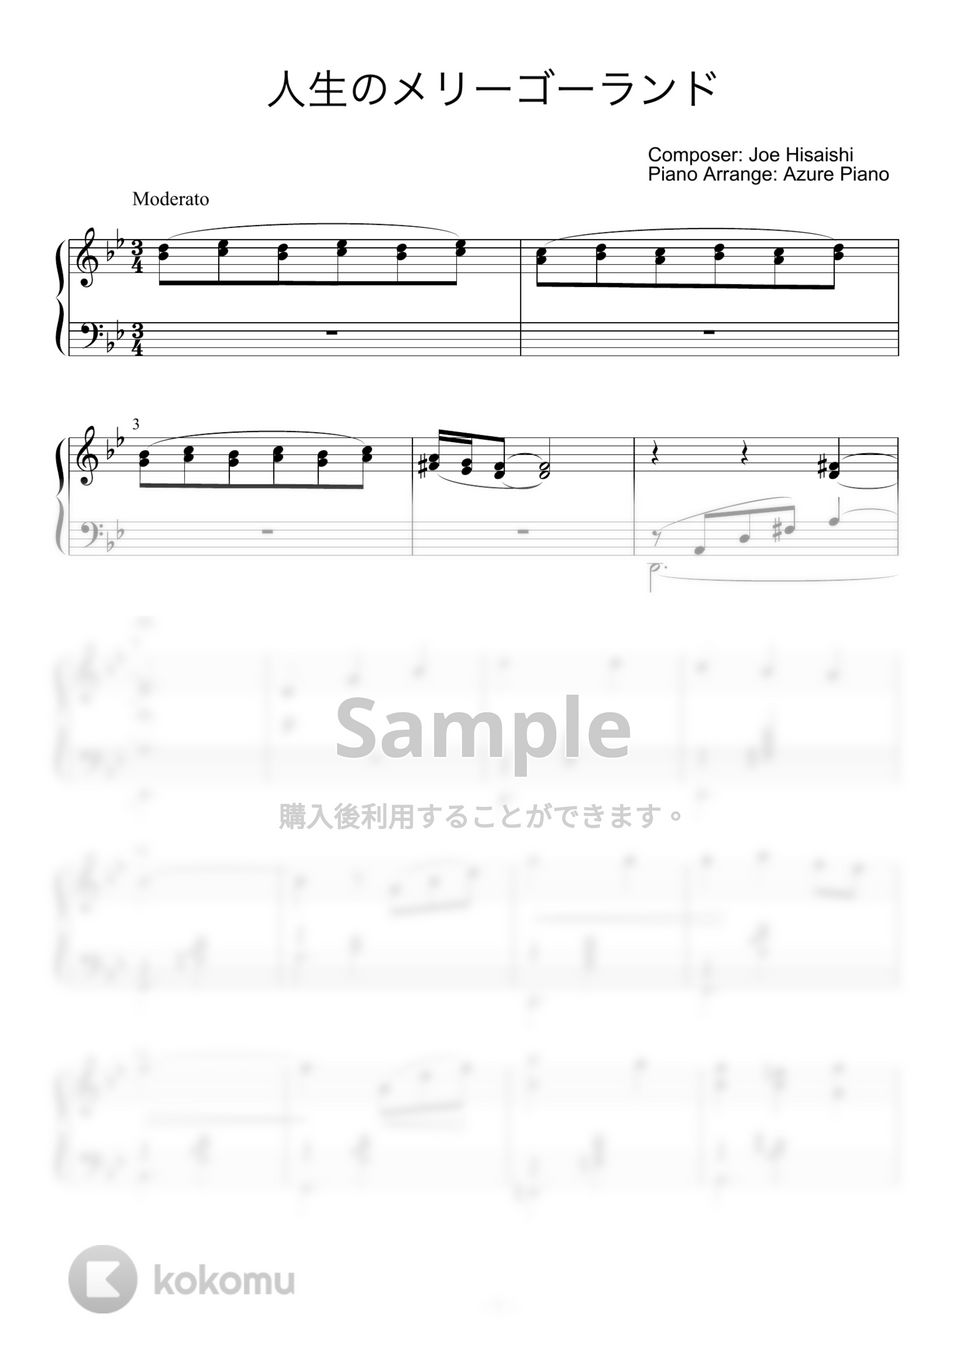 久石譲 - 人生のメリーゴーランド by Azure Piano